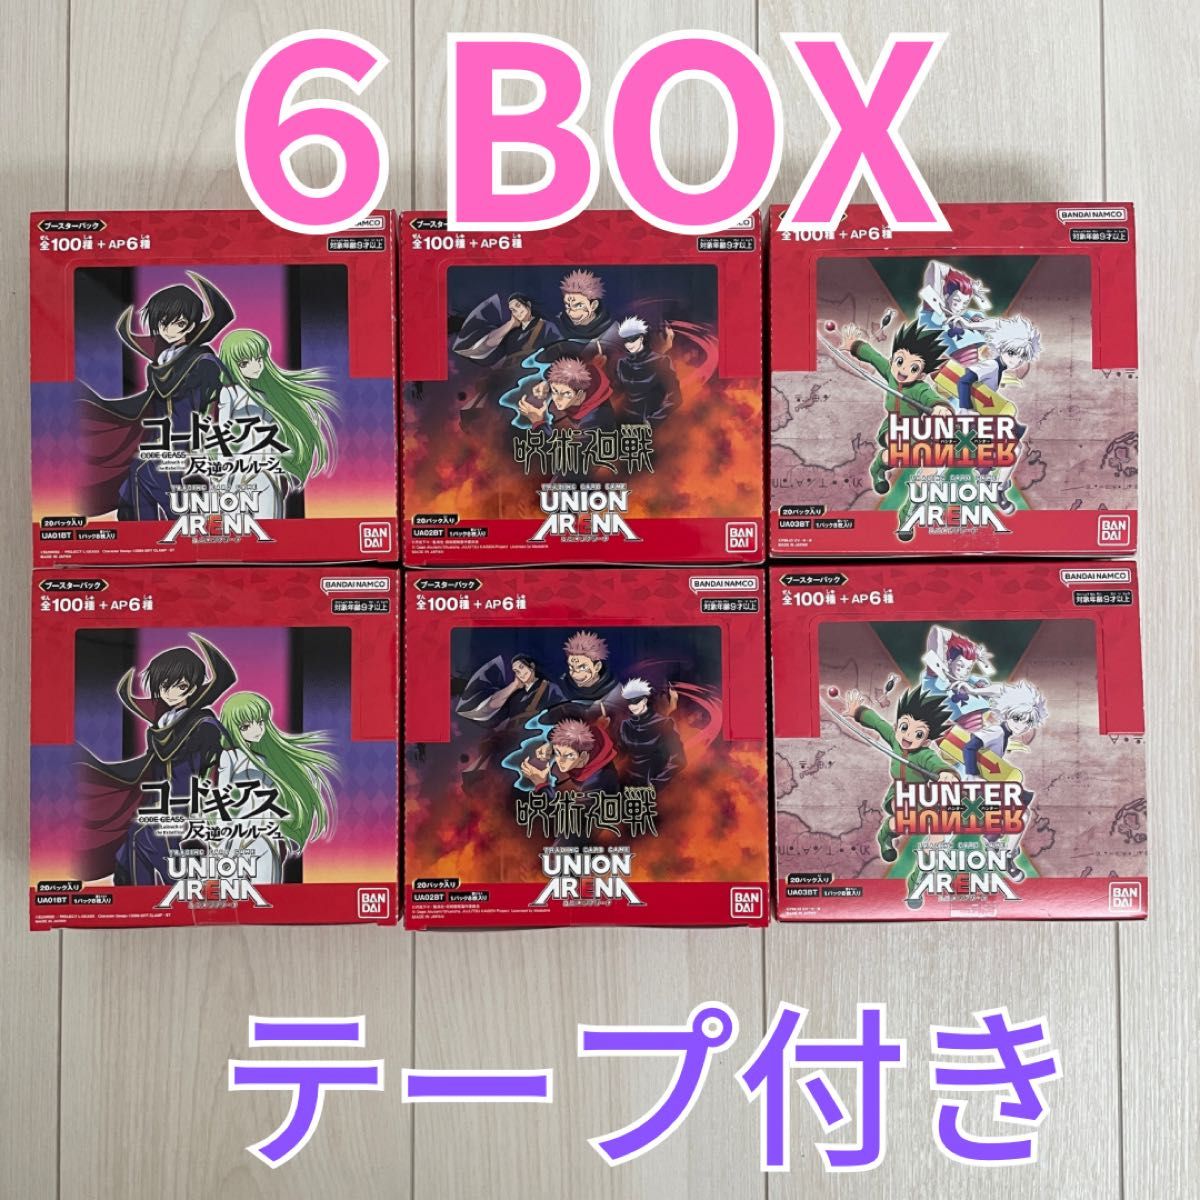 ユニオンアリーナ6BOX コードギアス呪術廻戦HUNTER×HUNTER-